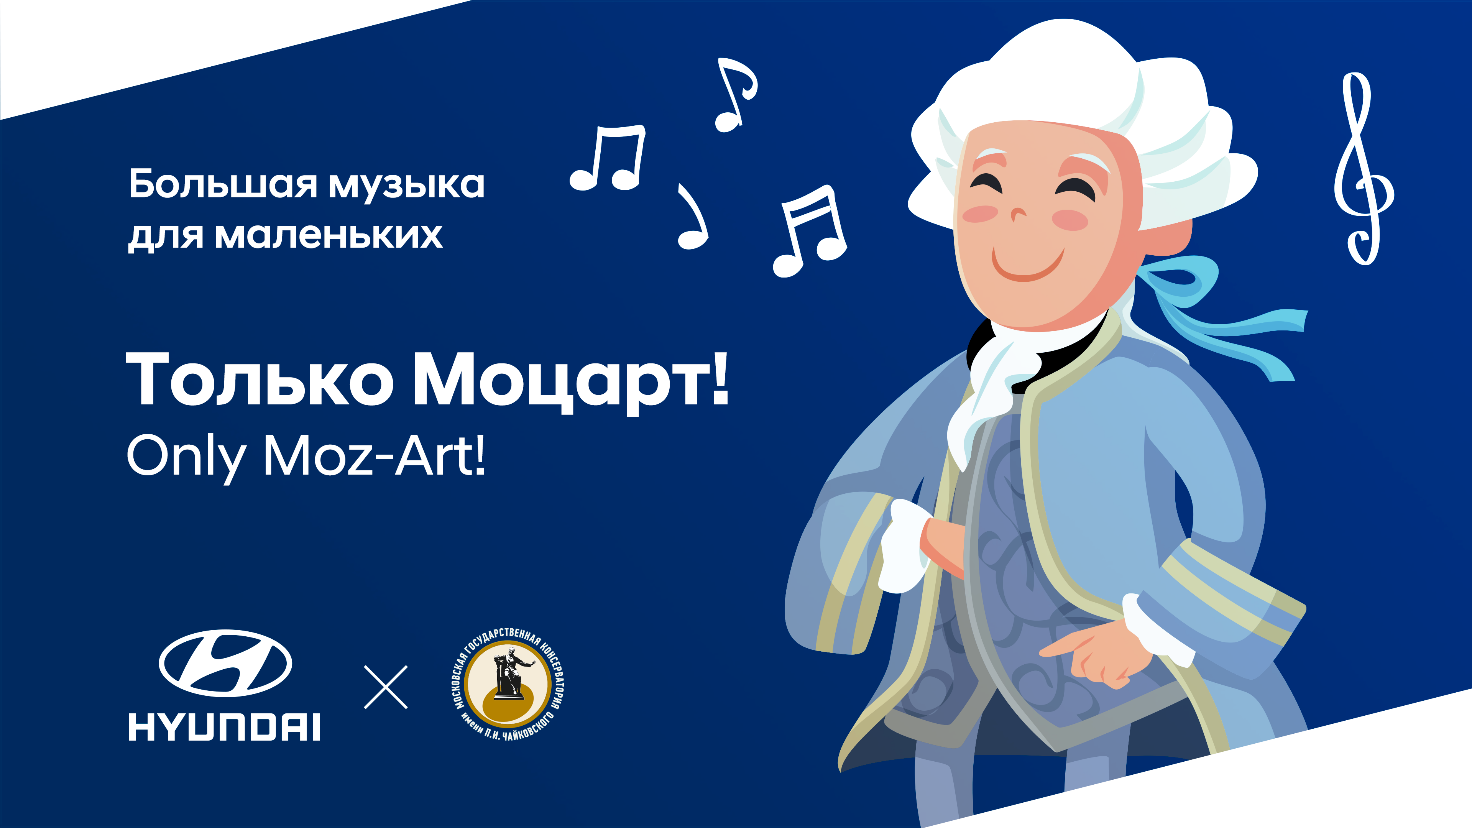 Hyundai и Московская консерватория приглашают на концерт «Только Моцарт!»